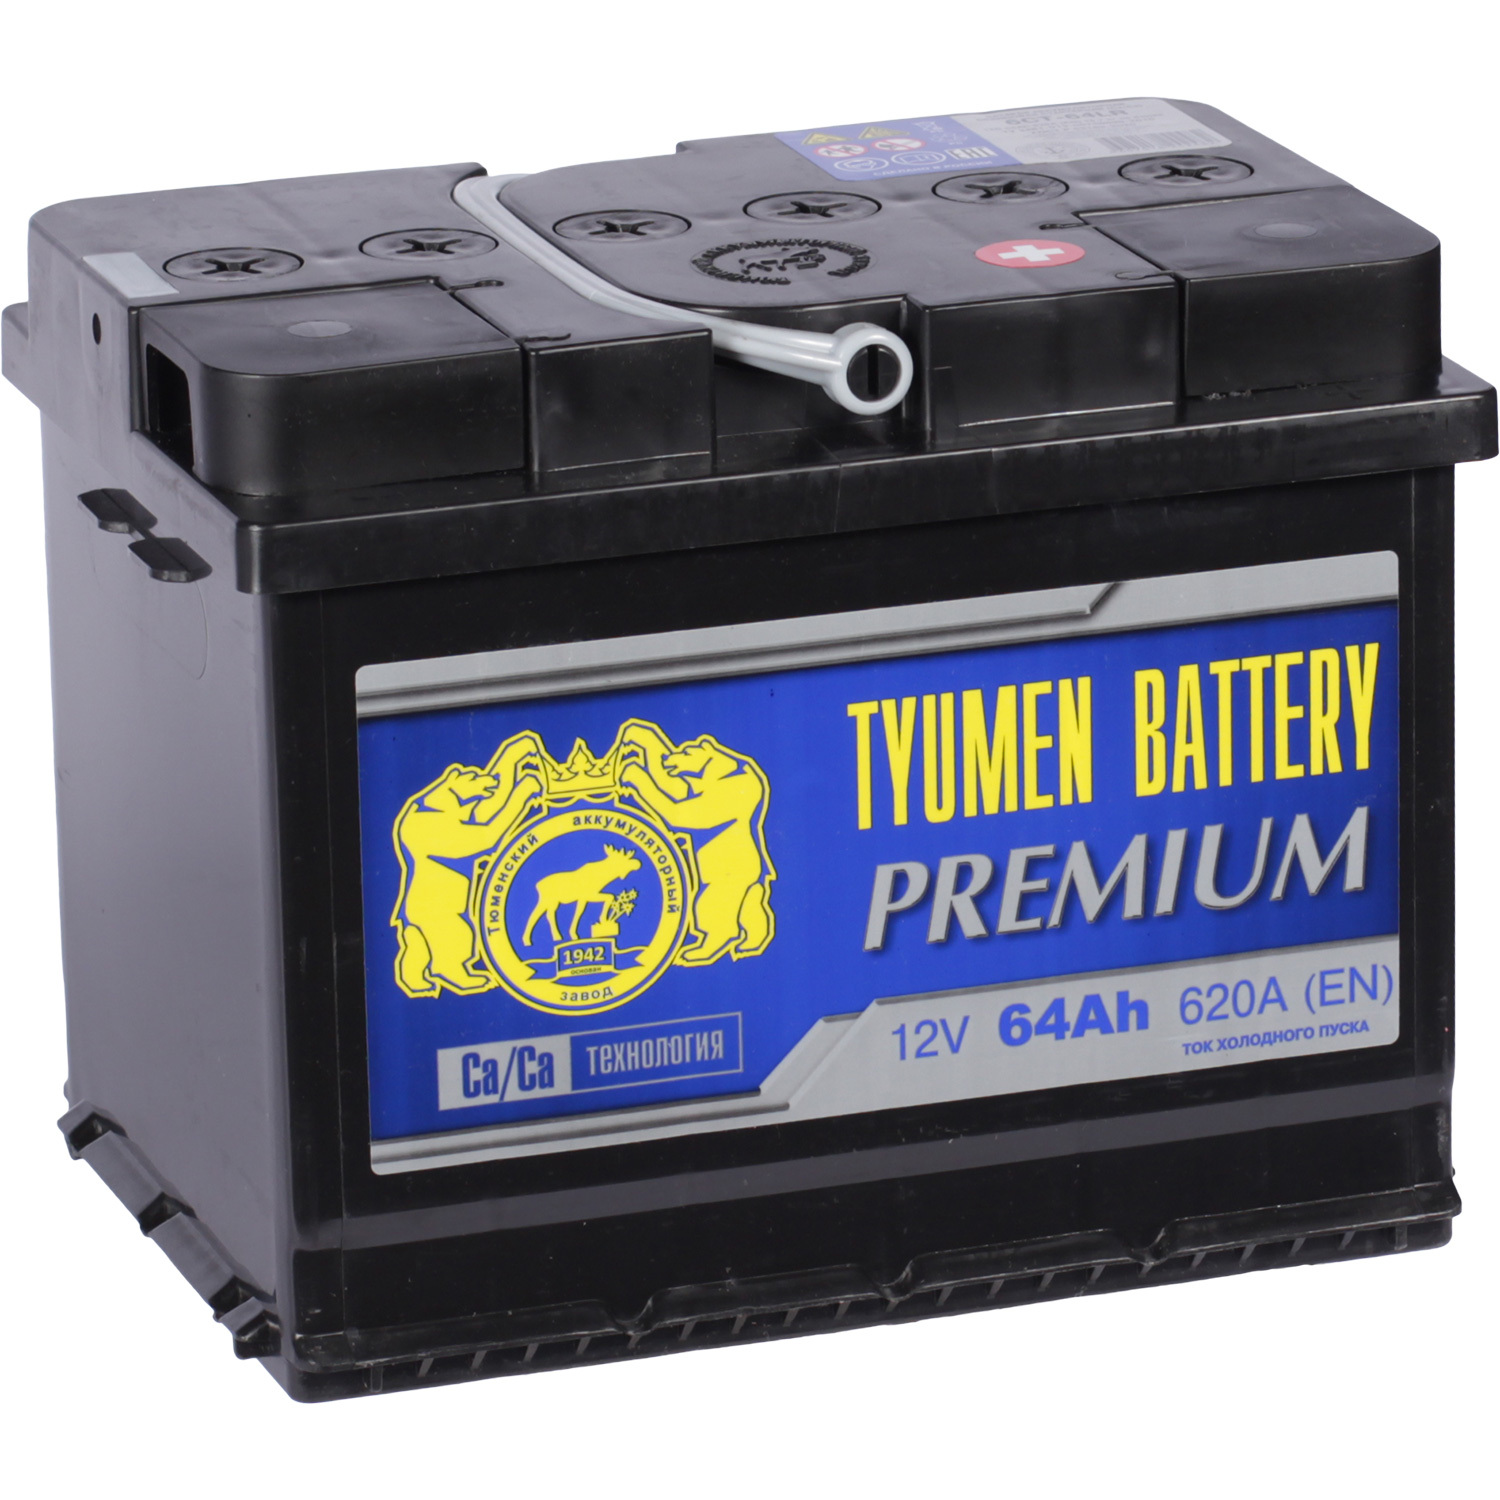 Tyumen Battery Автомобильный аккумулятор Tyumen Battery Premium 64 Ач обратная полярность L2 tyumen battery автомобильный аккумулятор tyumen battery 61 ач прямая полярность lb2